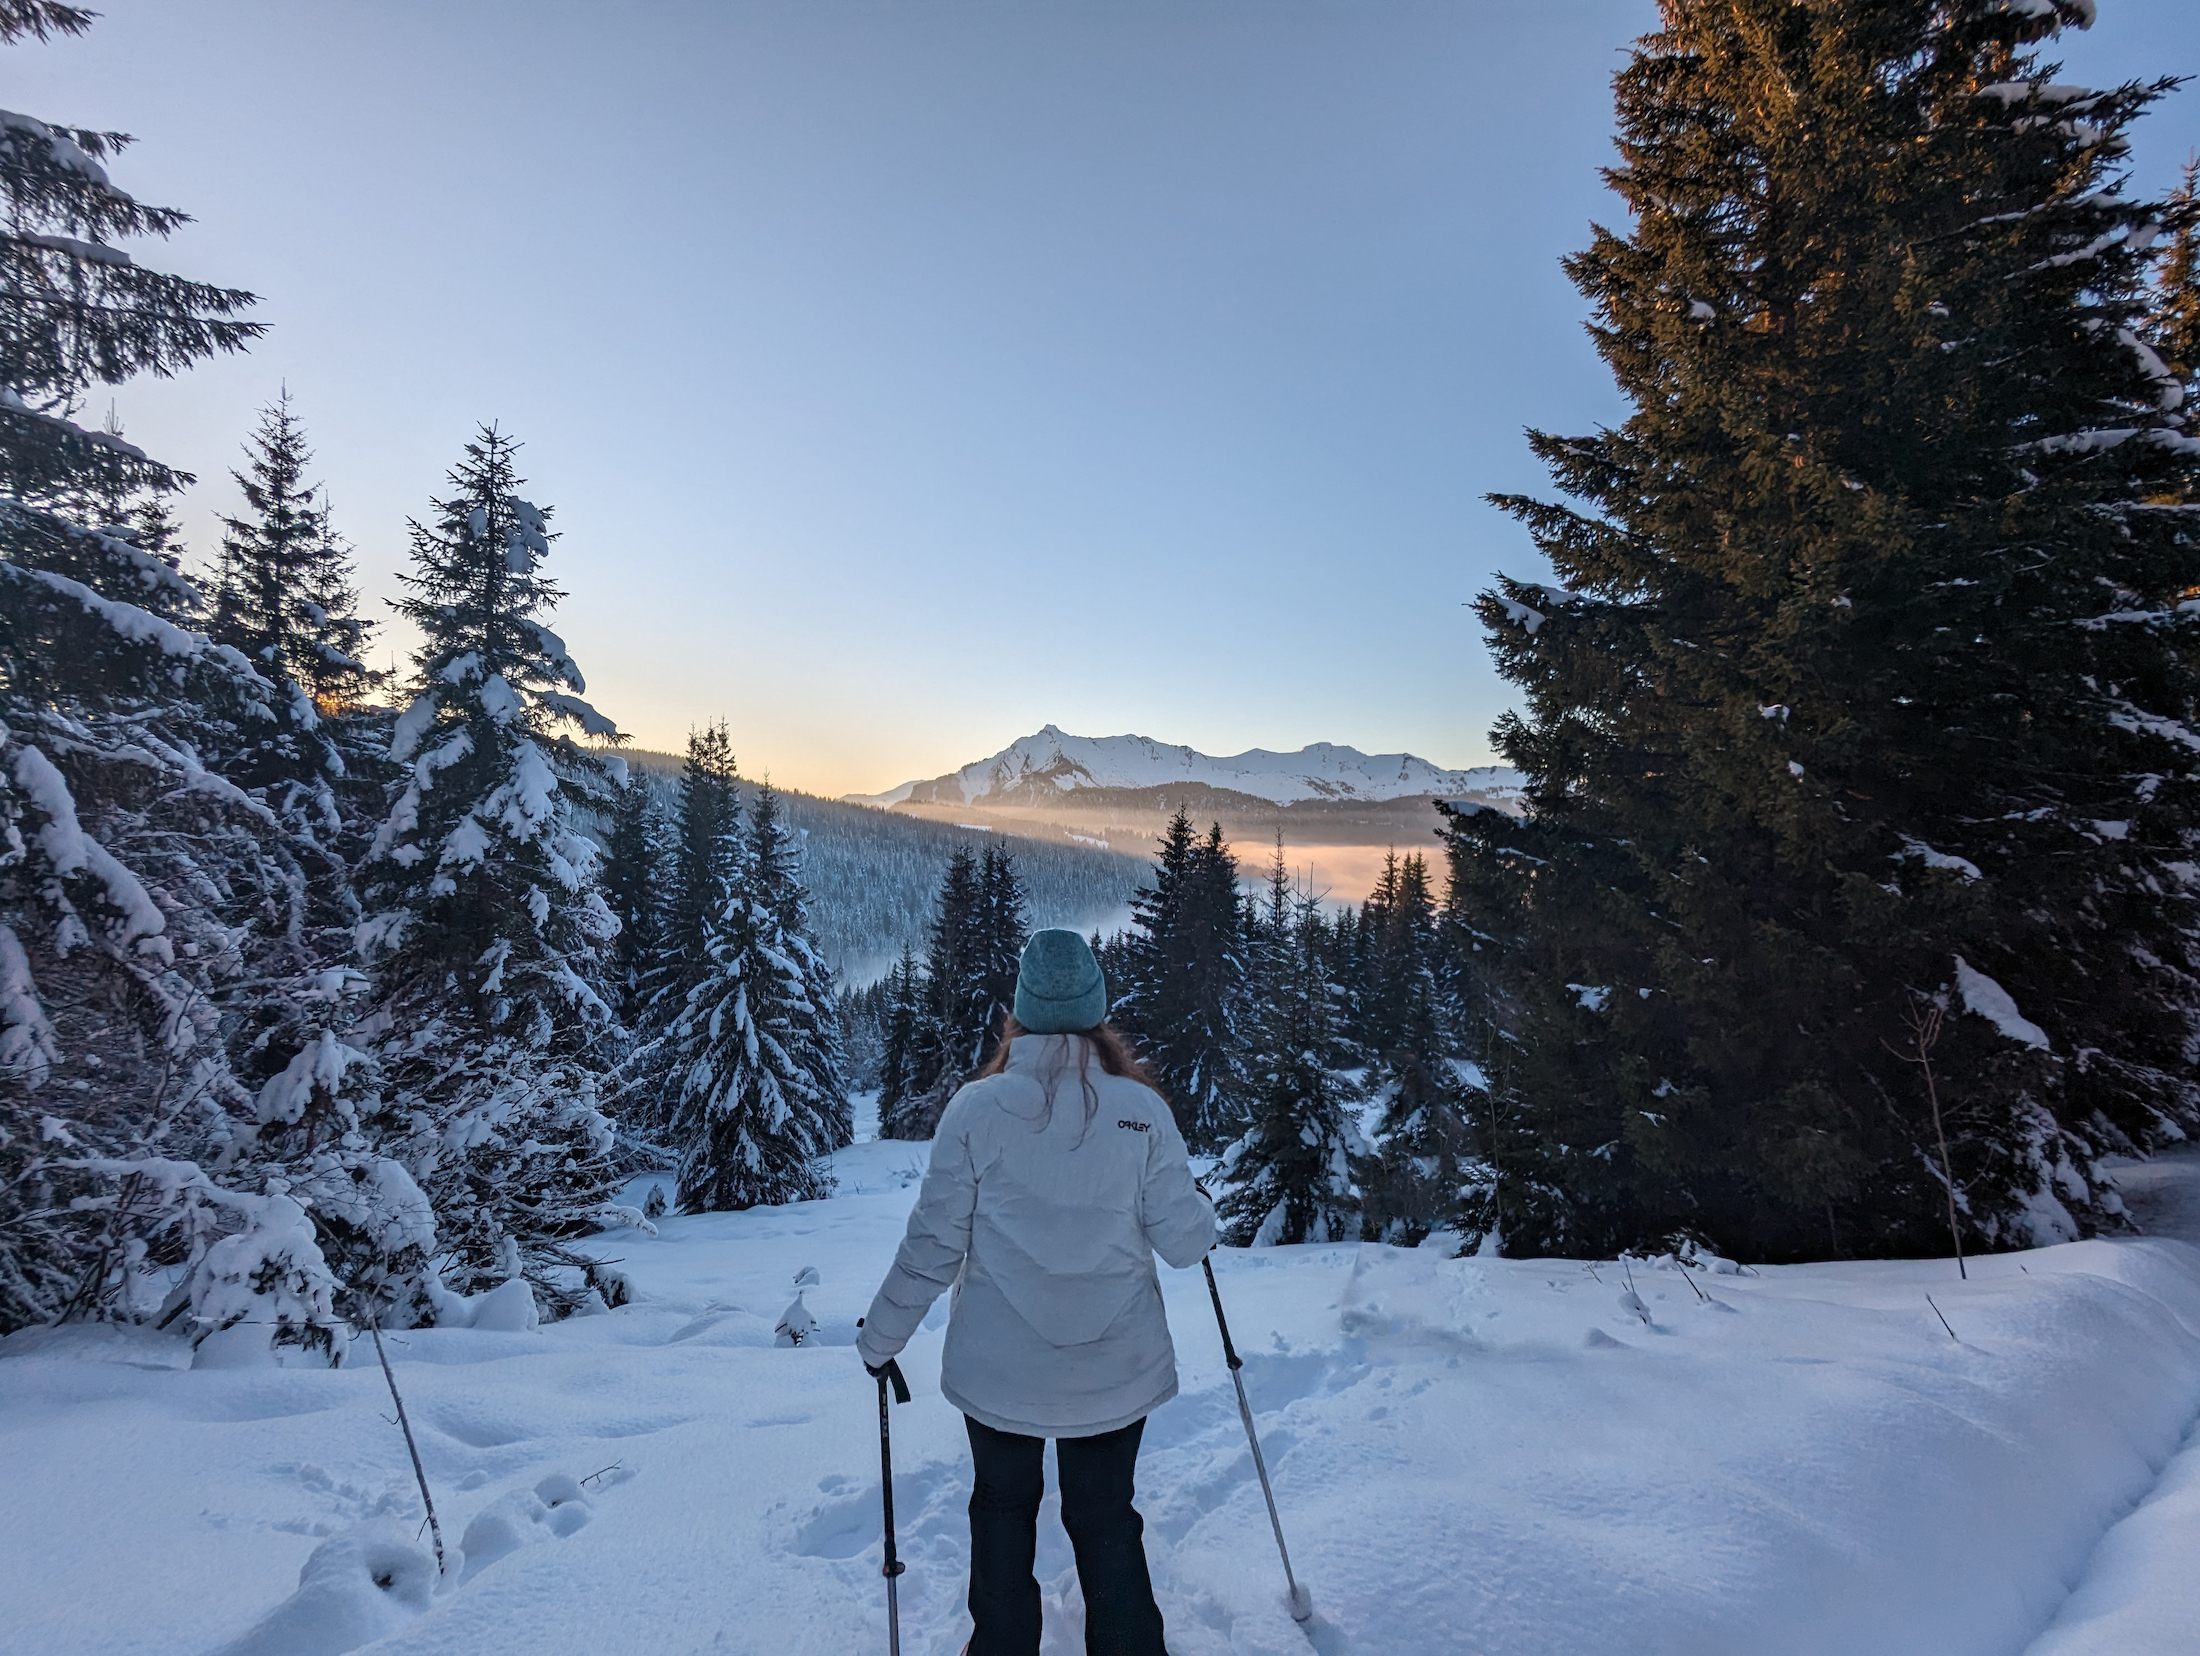 Maak een snow shoe hiking tocht en geniet van prachtige uitzichten. Vaak veel mooier dan vanaf de piste.